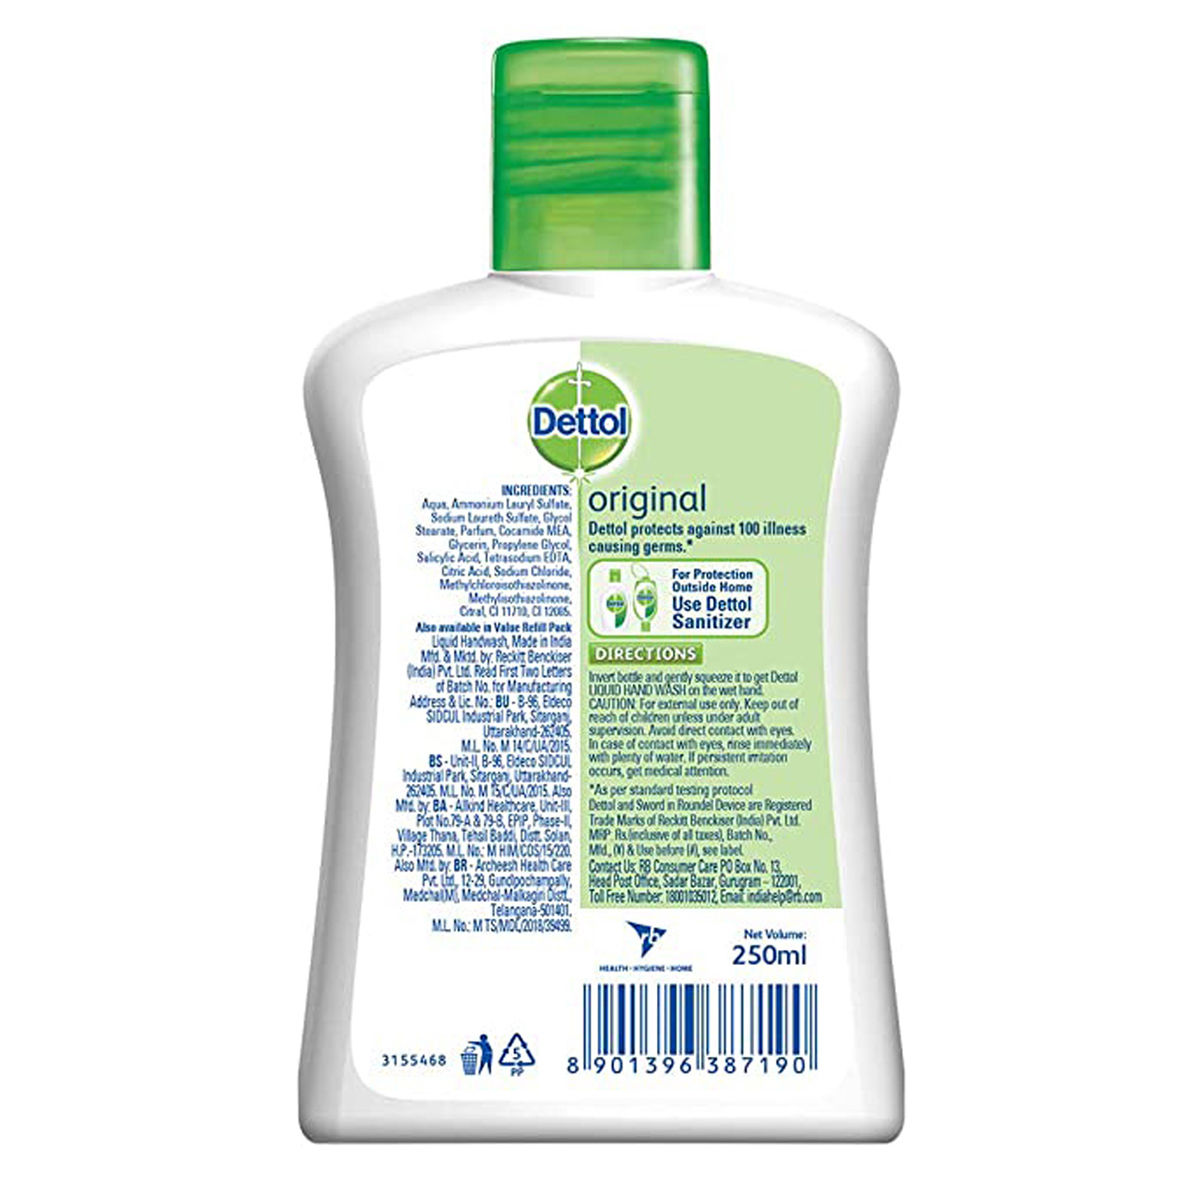 Dettol Original Liquid Handwash, 250 ml, Pack of 1 